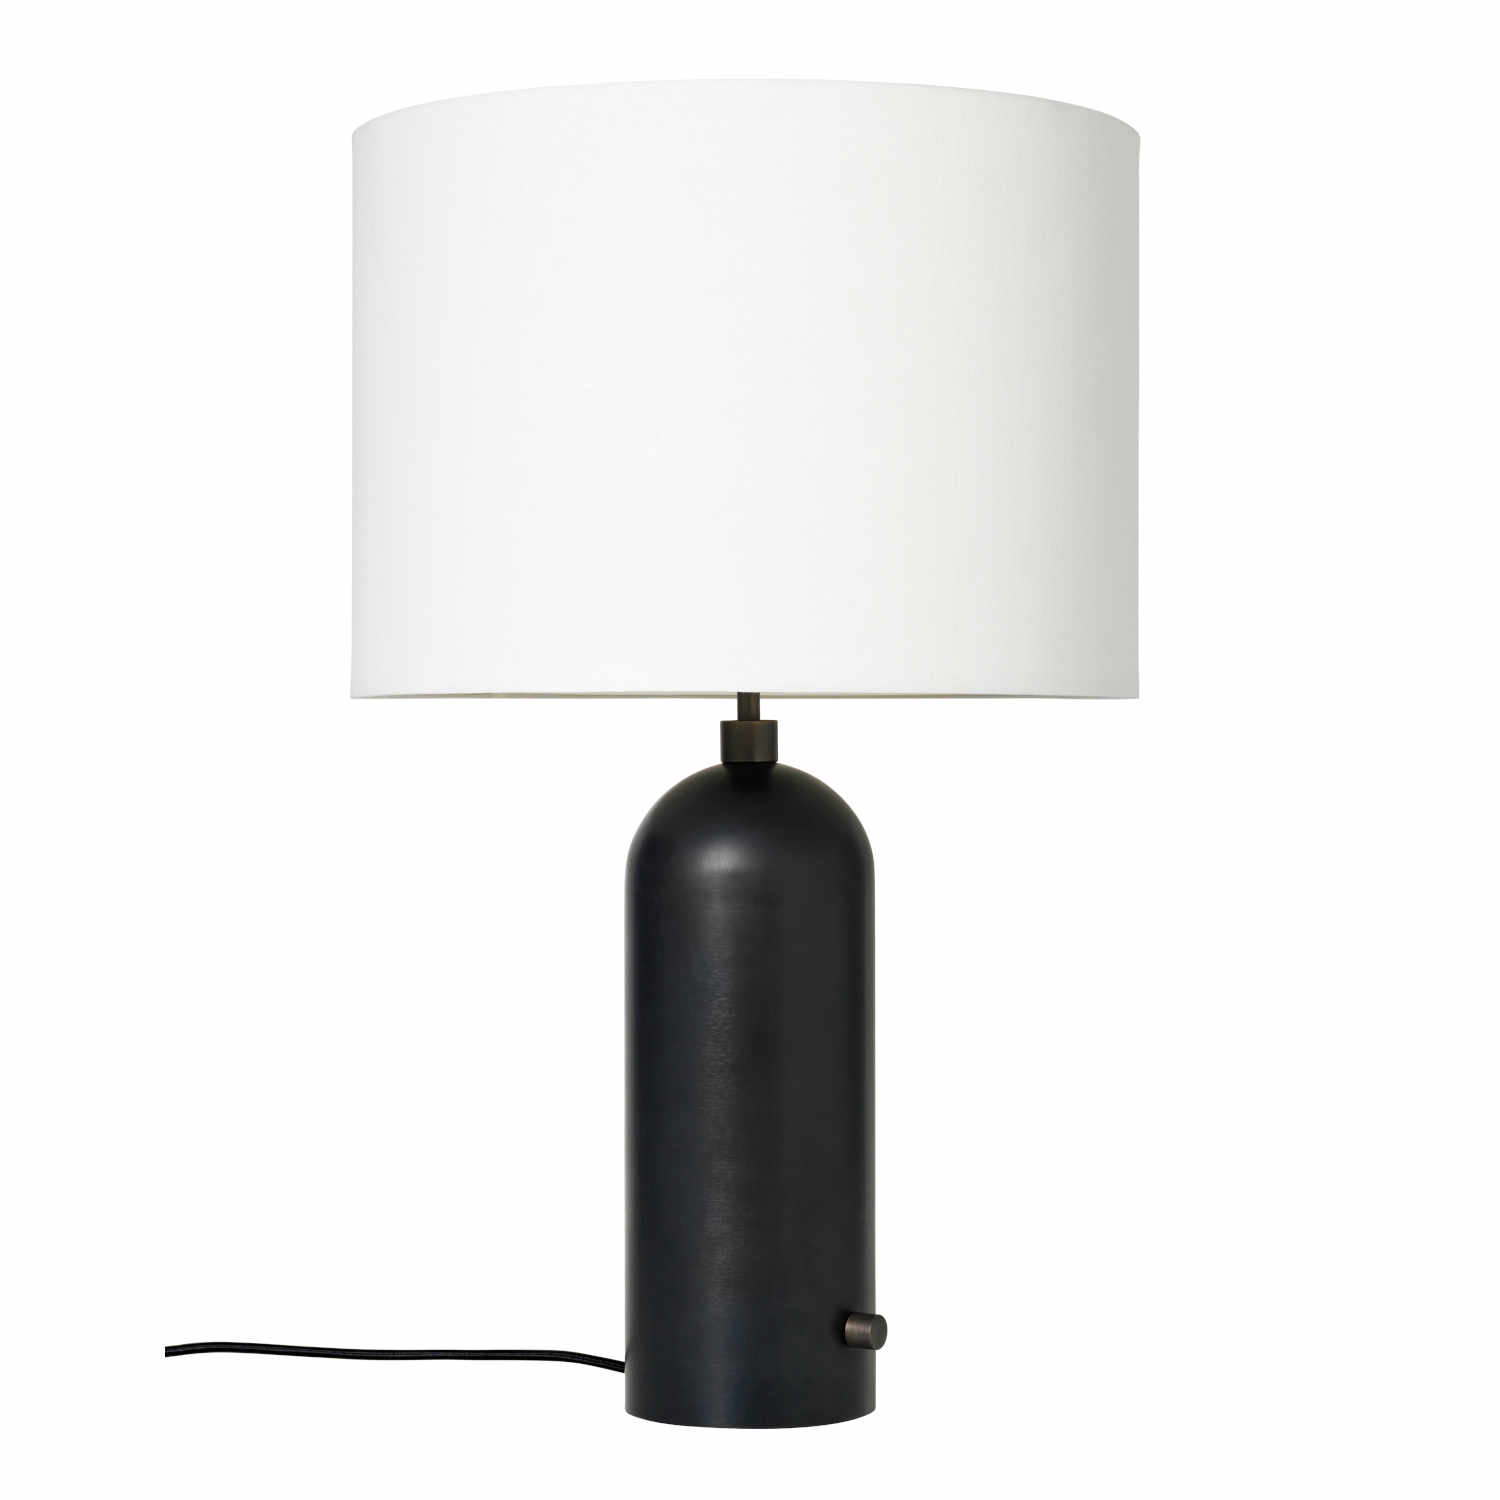 Gravity White Table Lamp Tischleuchte, Grösse h. 49 cm, Ausführung blackened steel von GUBI